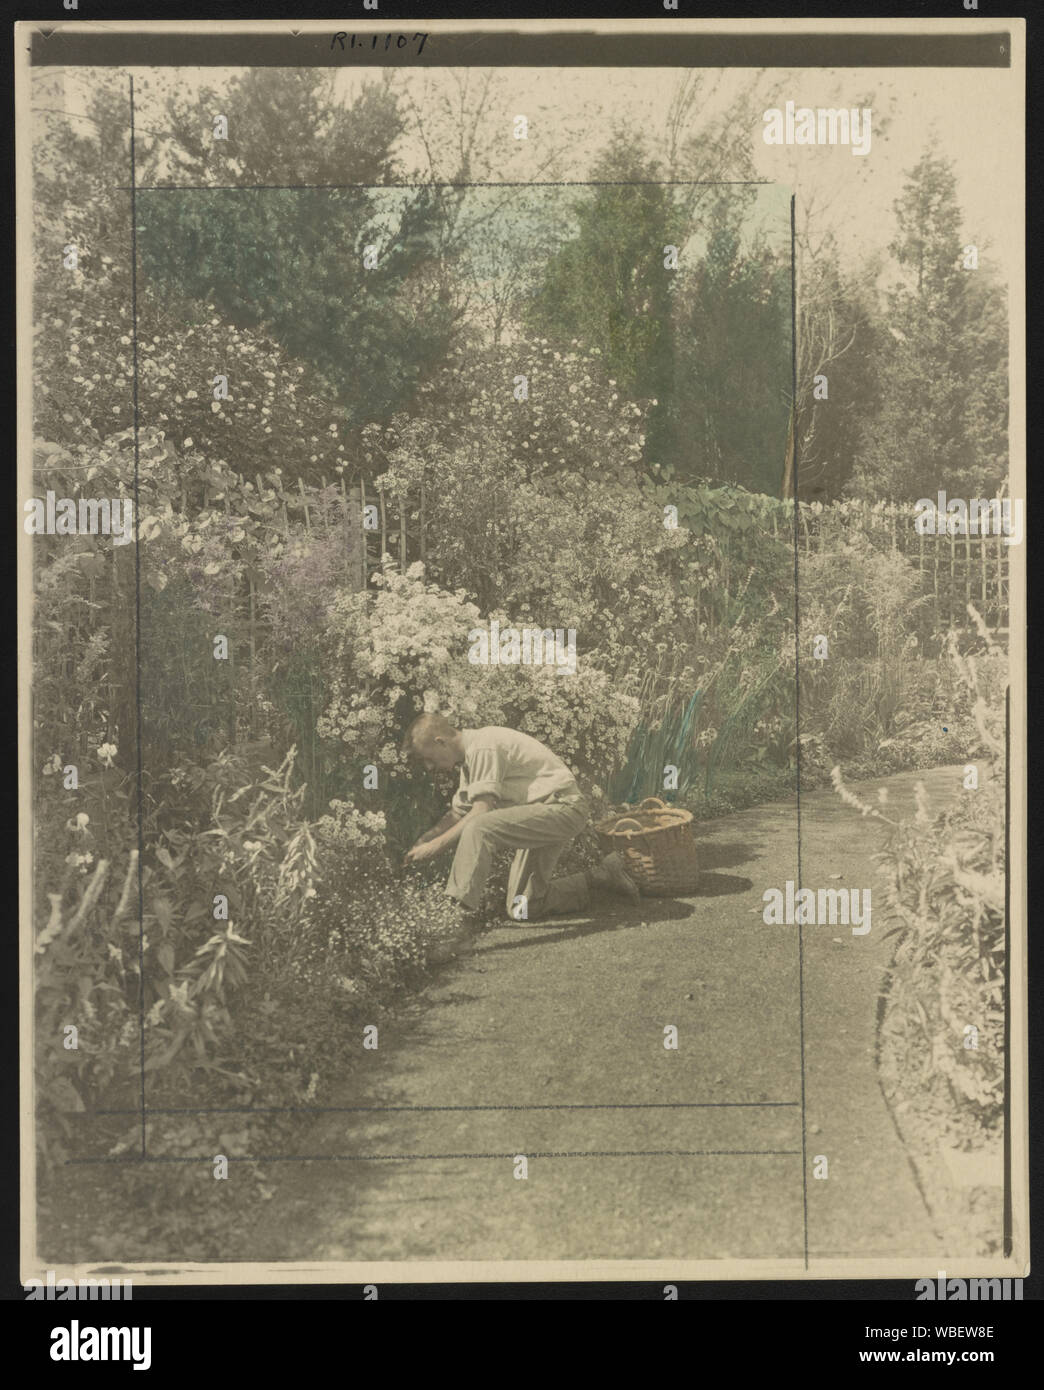 Jardinero arrodillado al borde floral tienden, plantea para ilustrar el  poema de Rudyard Kipling la gloria